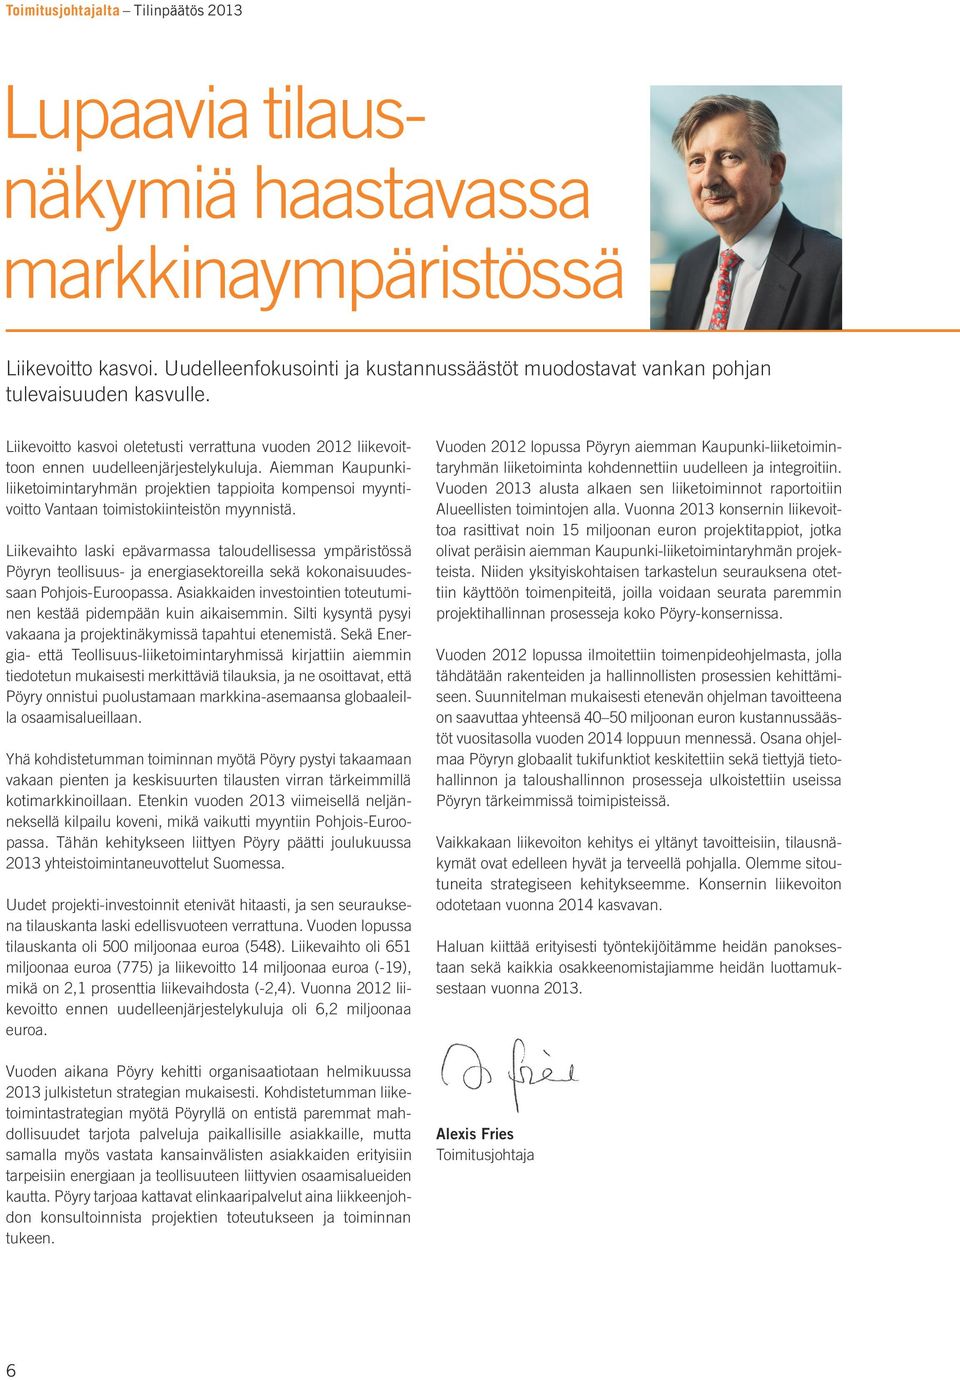 Aiemman Kaupunkiliiketoimintaryhmän projektien tappioita kompensoi myyntivoitto Vantaan toimistokiinteistön myynnistä.